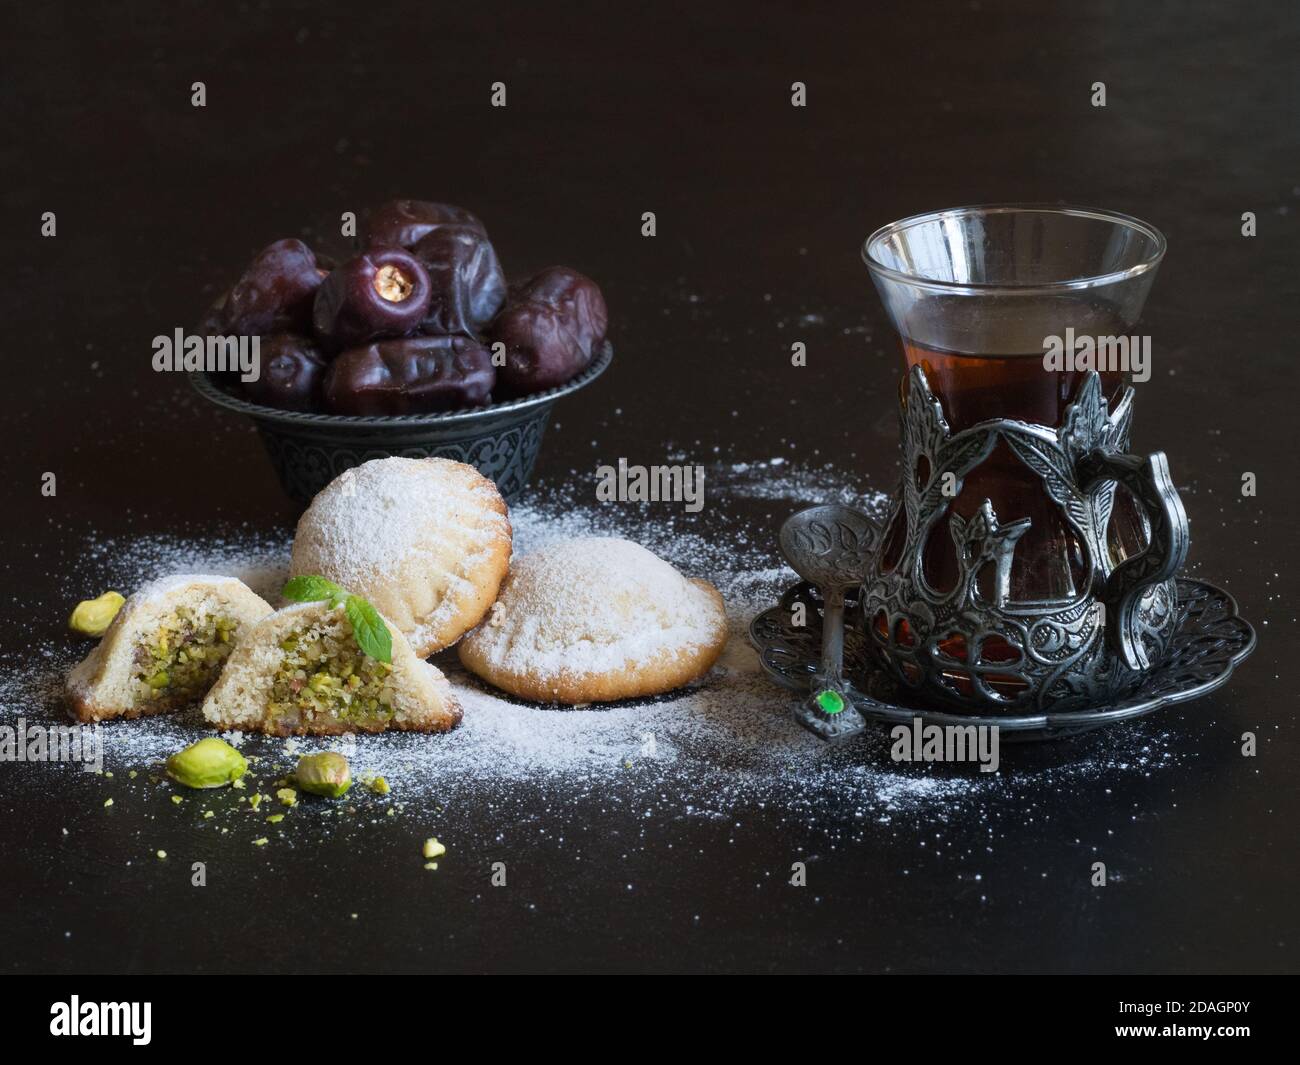 Biscuits égyptiens 'Kahk El Eid' avec dates et tasse de thé servis dans une table noire. Biscuits de la fête islamique El Fitr. Banque D'Images